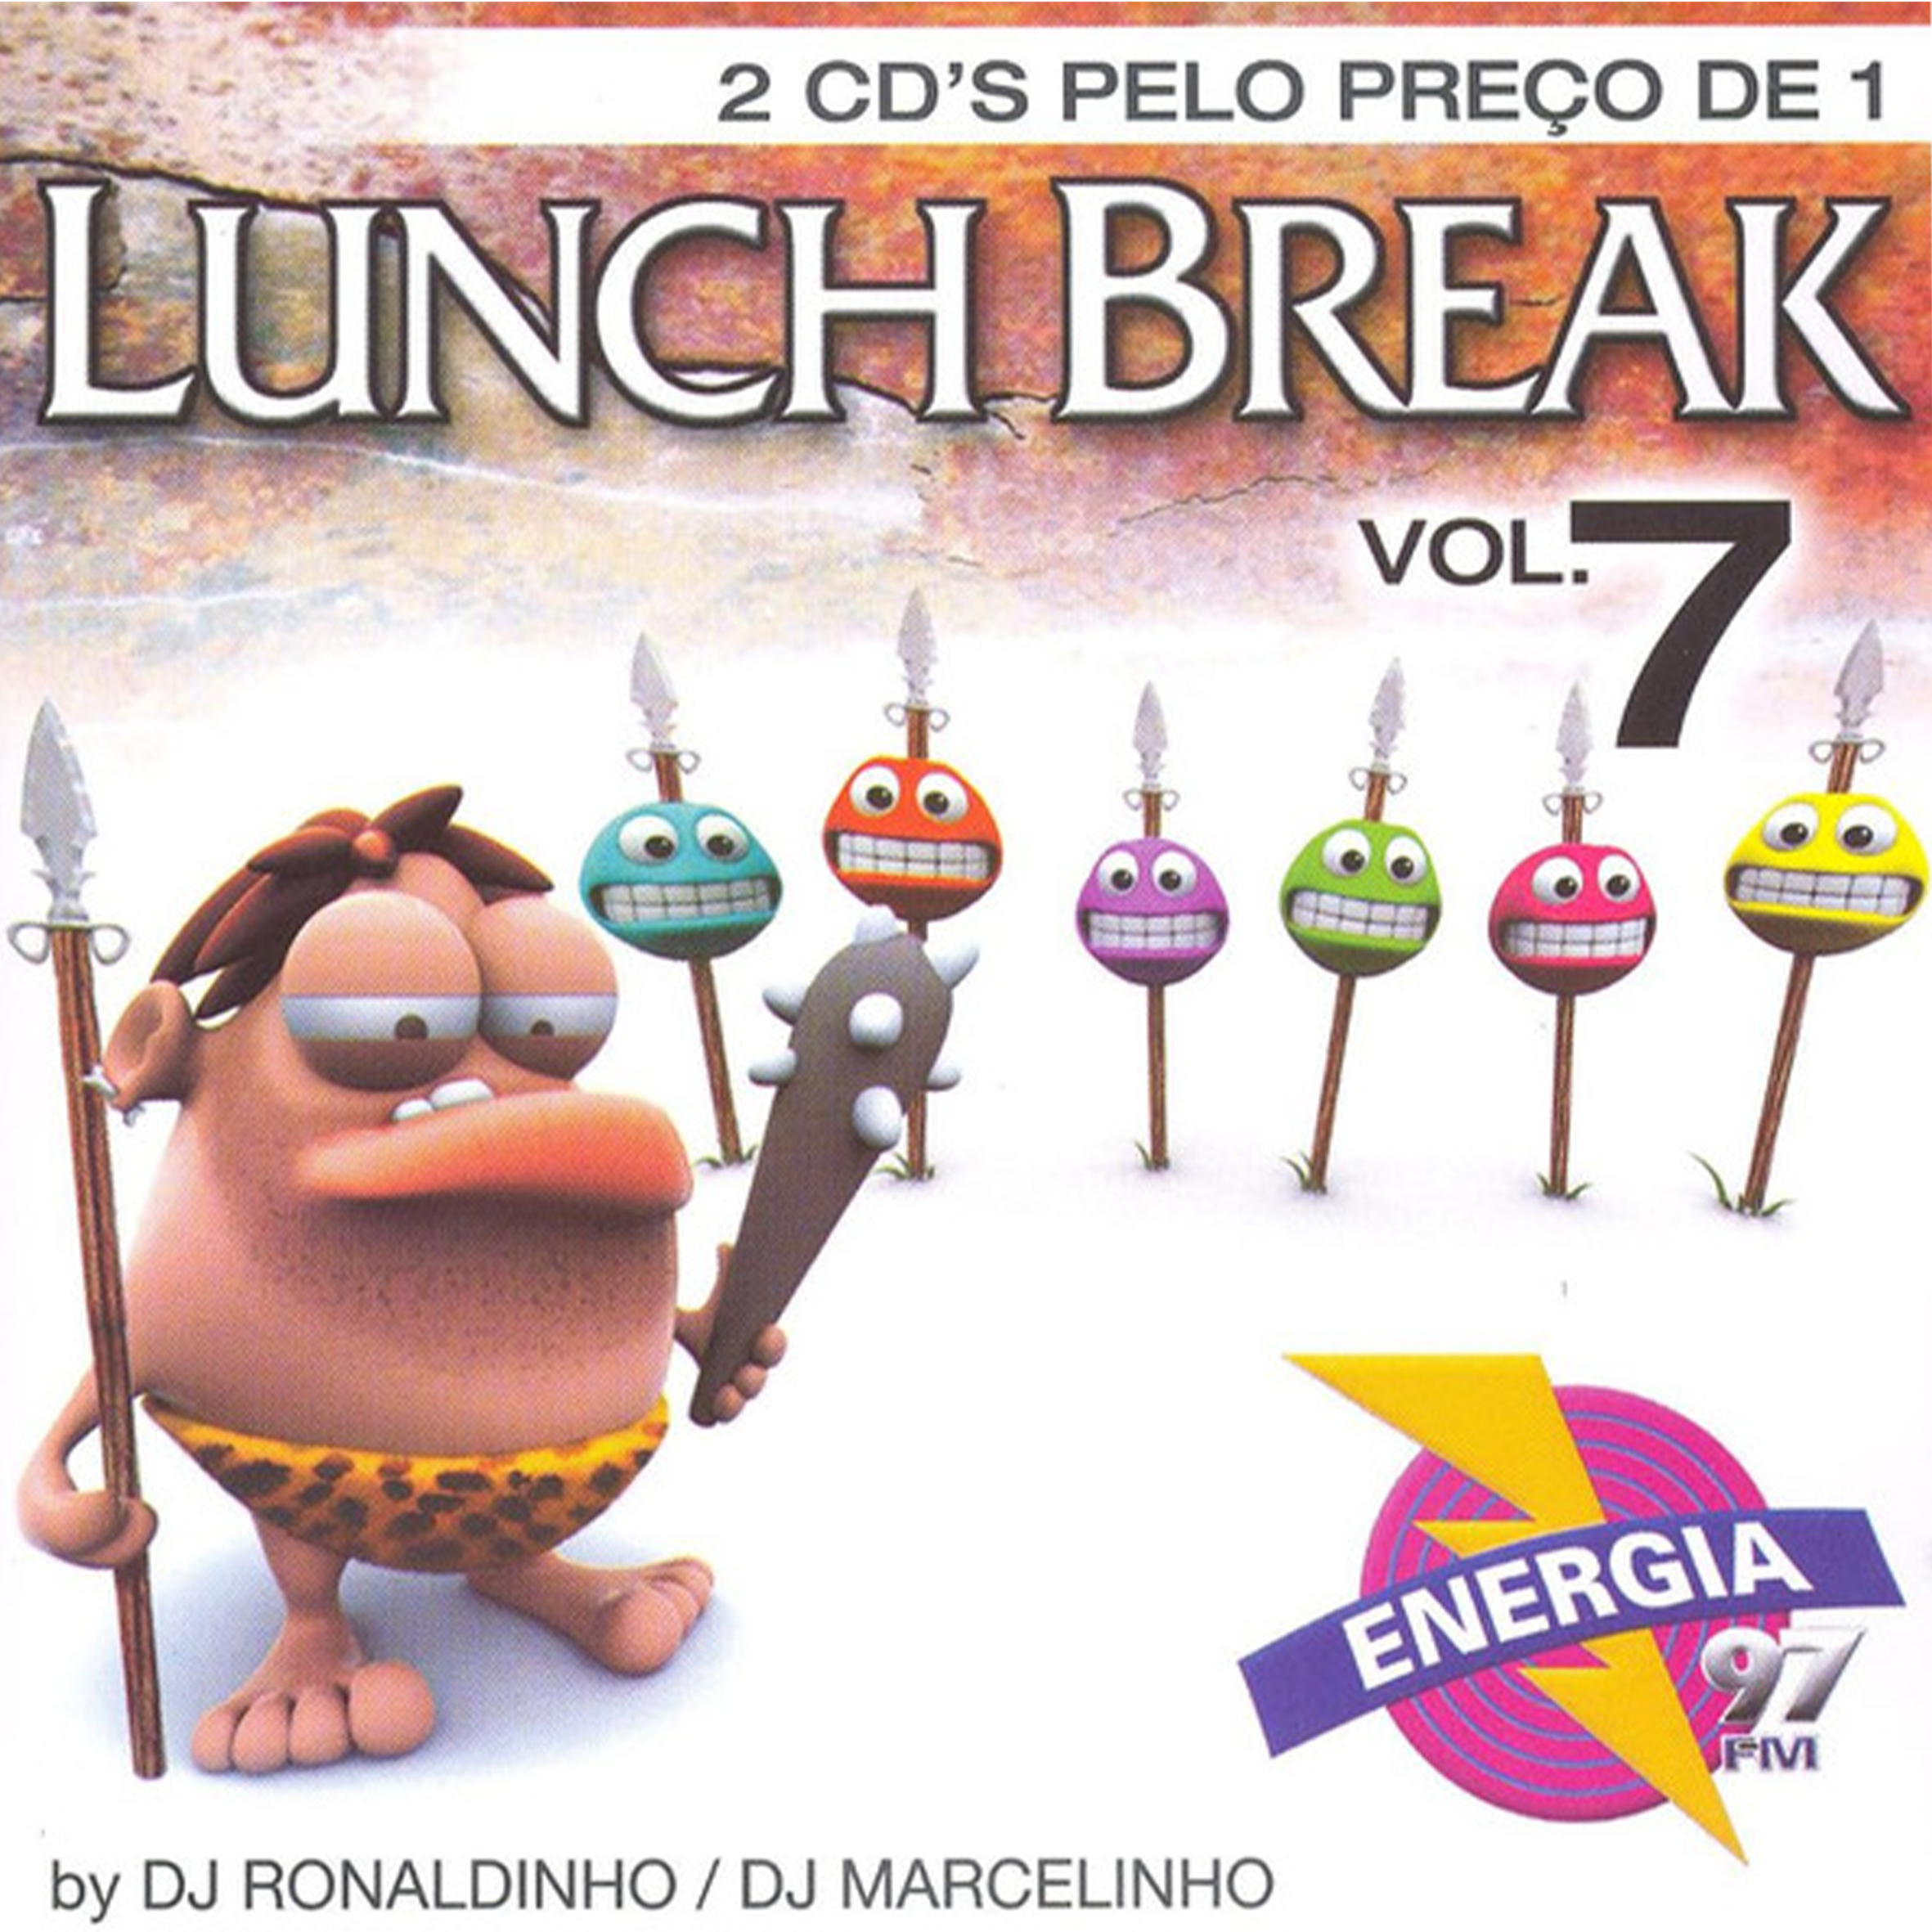 CD - Lunch Break - Vol.7 By DJ Ronaldinho  DJ Marcelinho (Duplo)